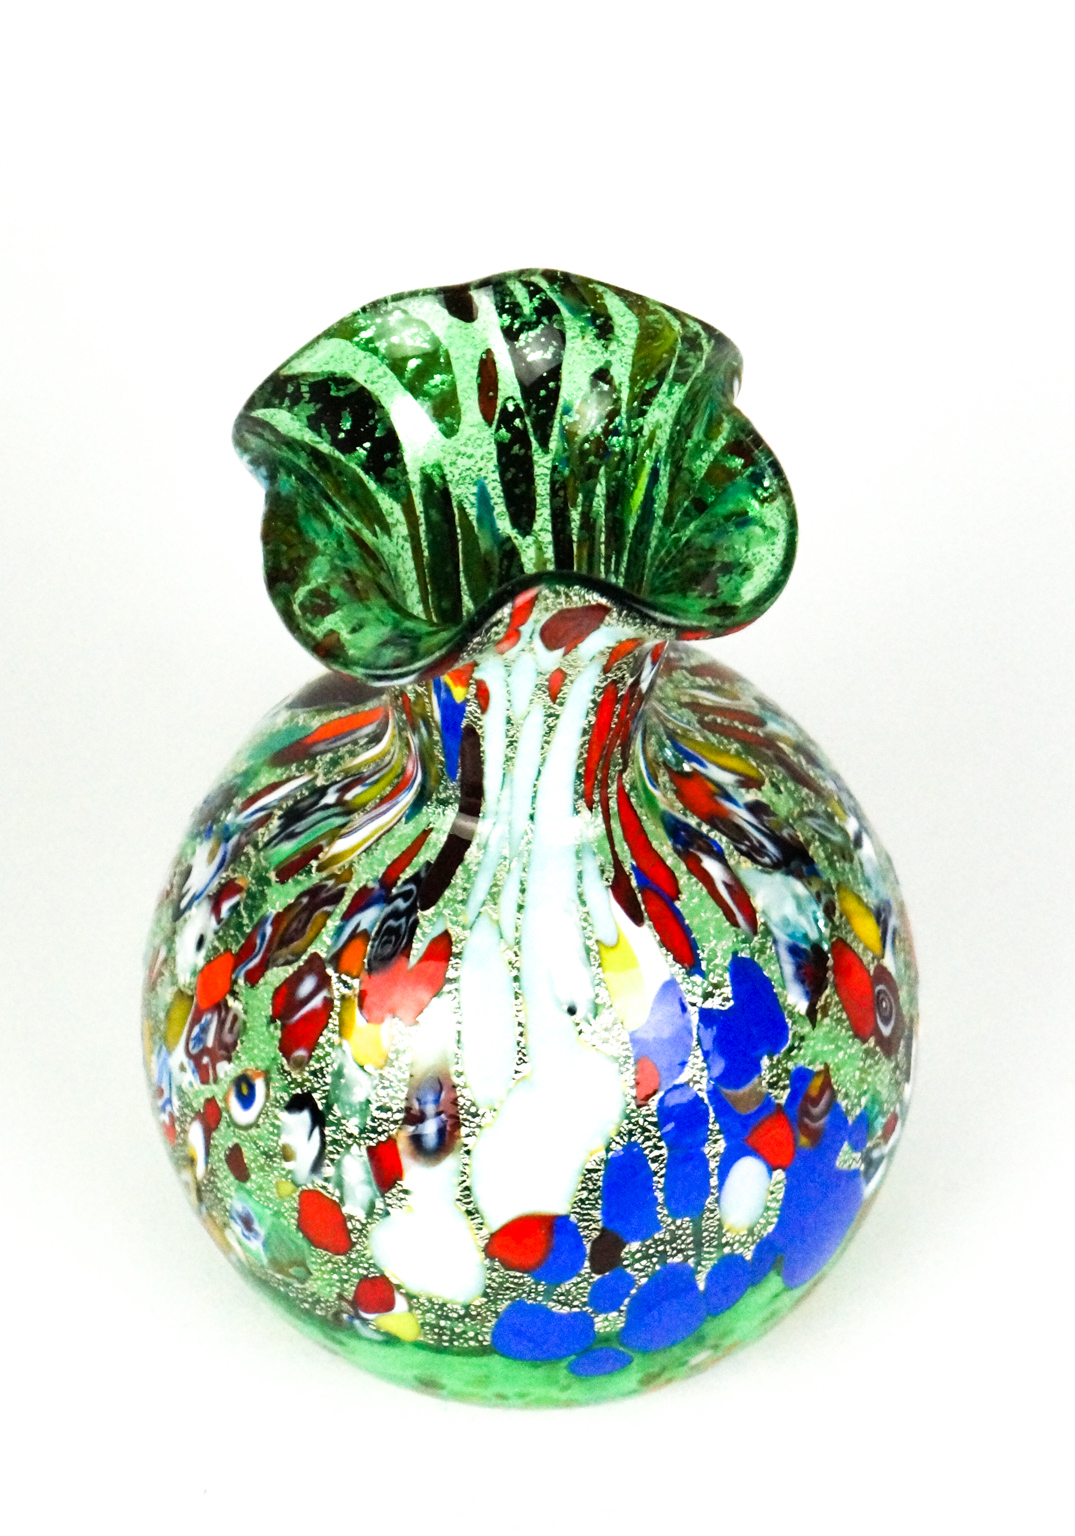 Fiorito - Murano Vase Fantasy Green